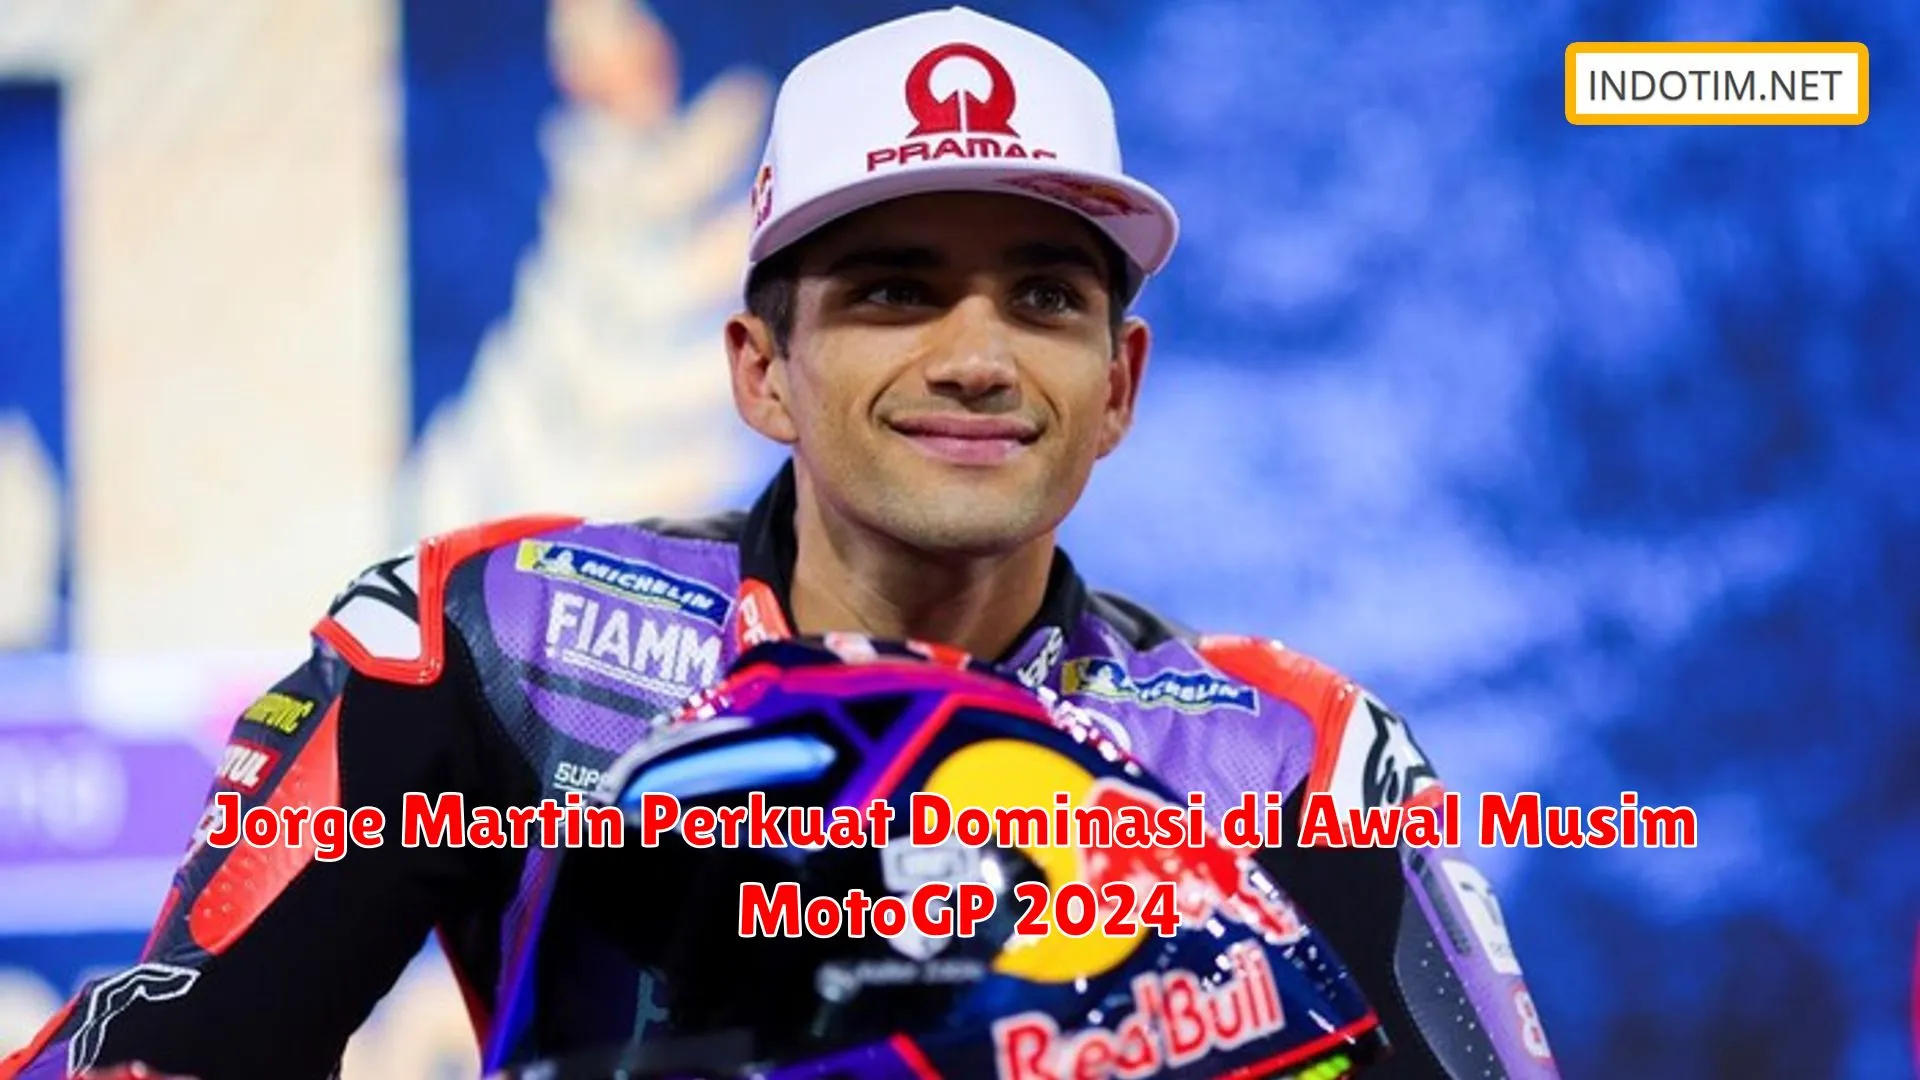 Jorge Martin Perkuat Dominasi di Awal Musim MotoGP 2024